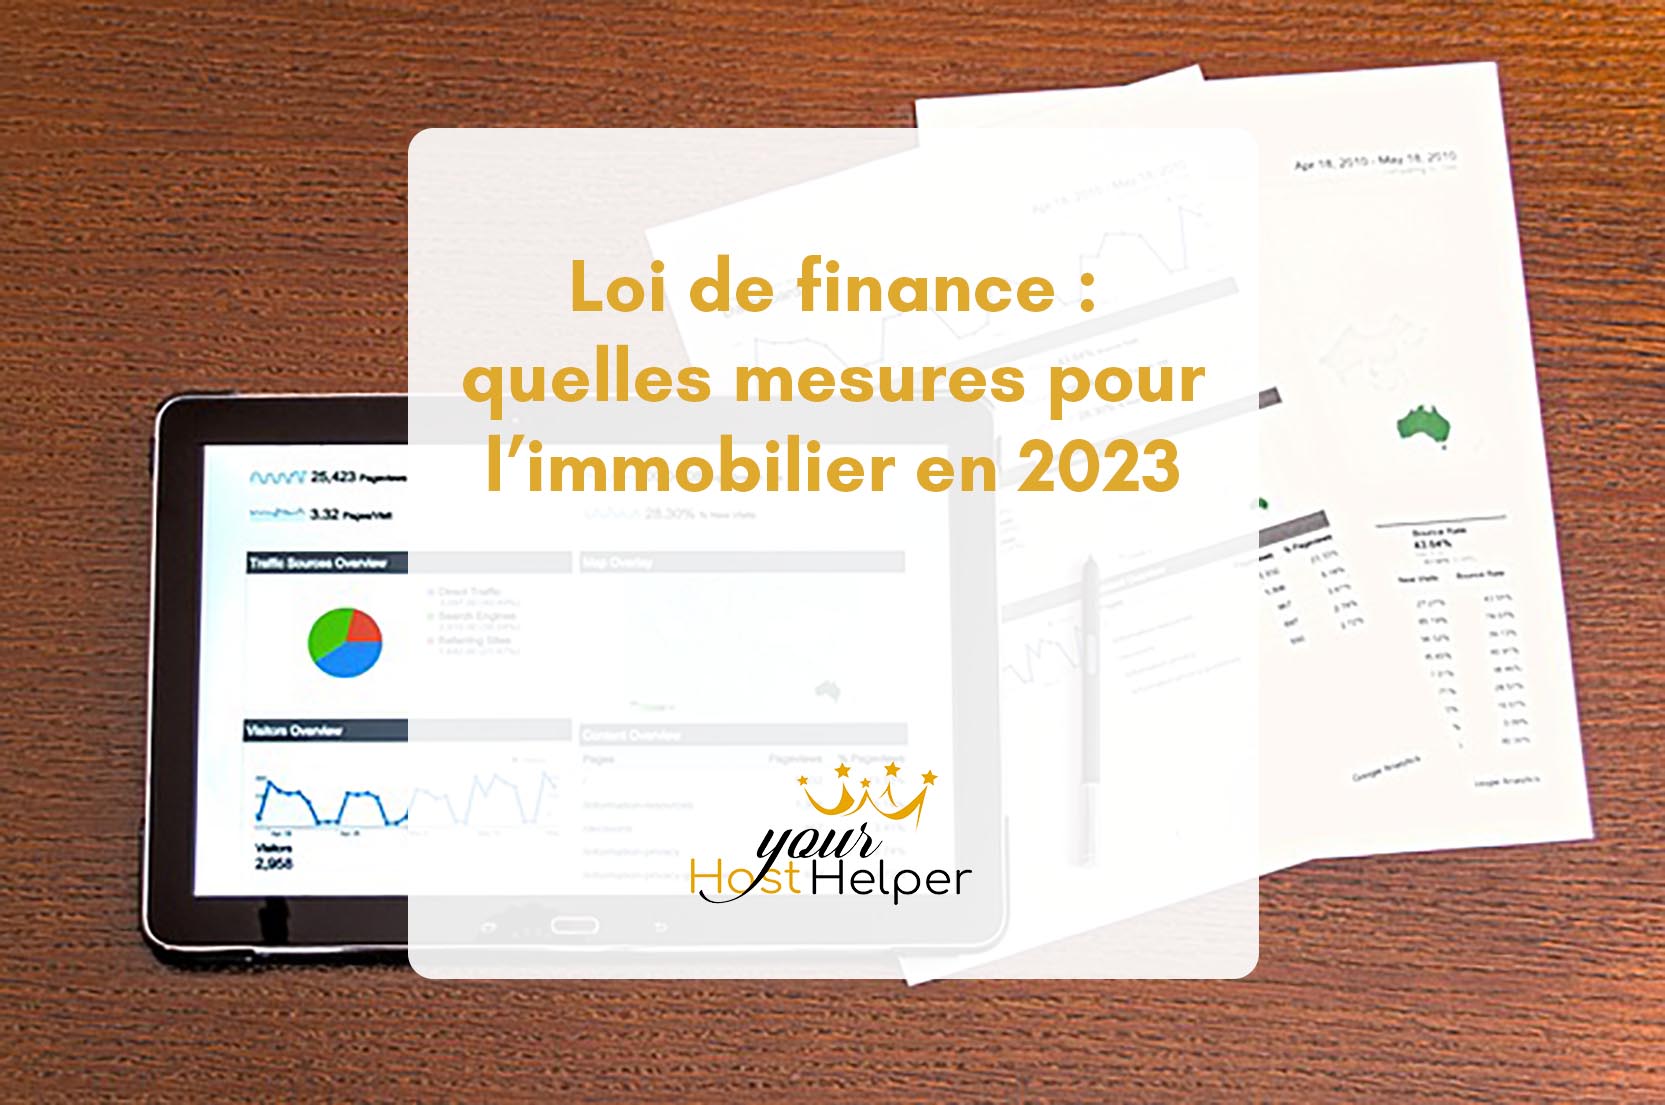 В настоящее время вы просматриваете пояснения вашего консьержа в Ла-Рошели о мерах и последствиях закона о финансах 2023 года.